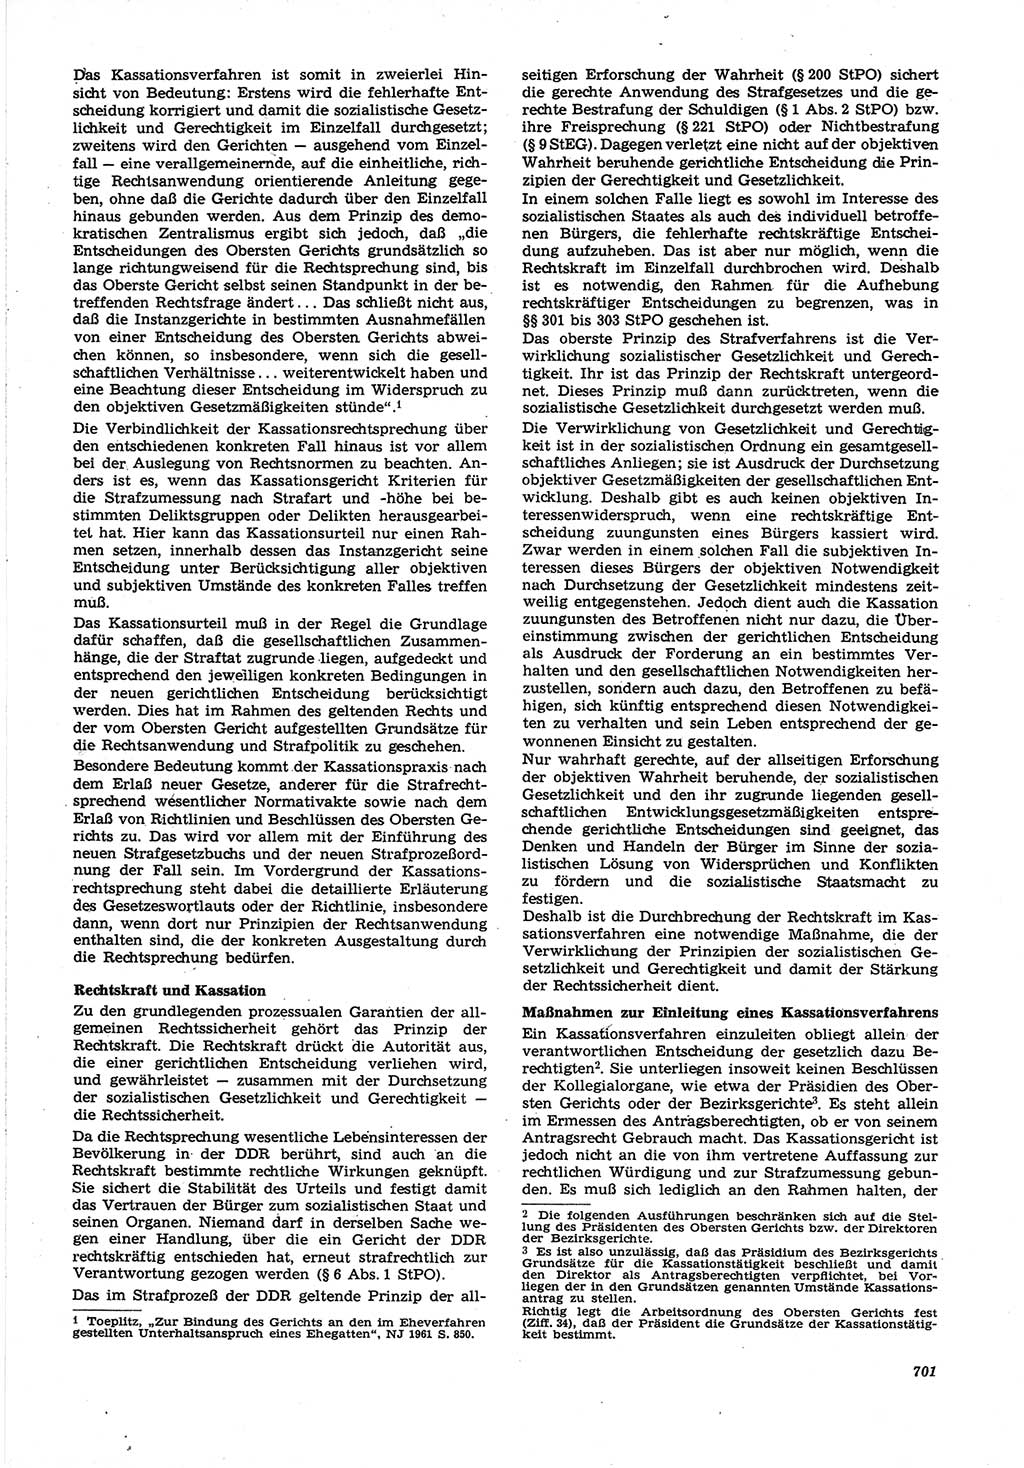 Neue Justiz (NJ), Zeitschrift für Recht und Rechtswissenschaft [Deutsche Demokratische Republik (DDR)], 21. Jahrgang 1967, Seite 701 (NJ DDR 1967, S. 701)